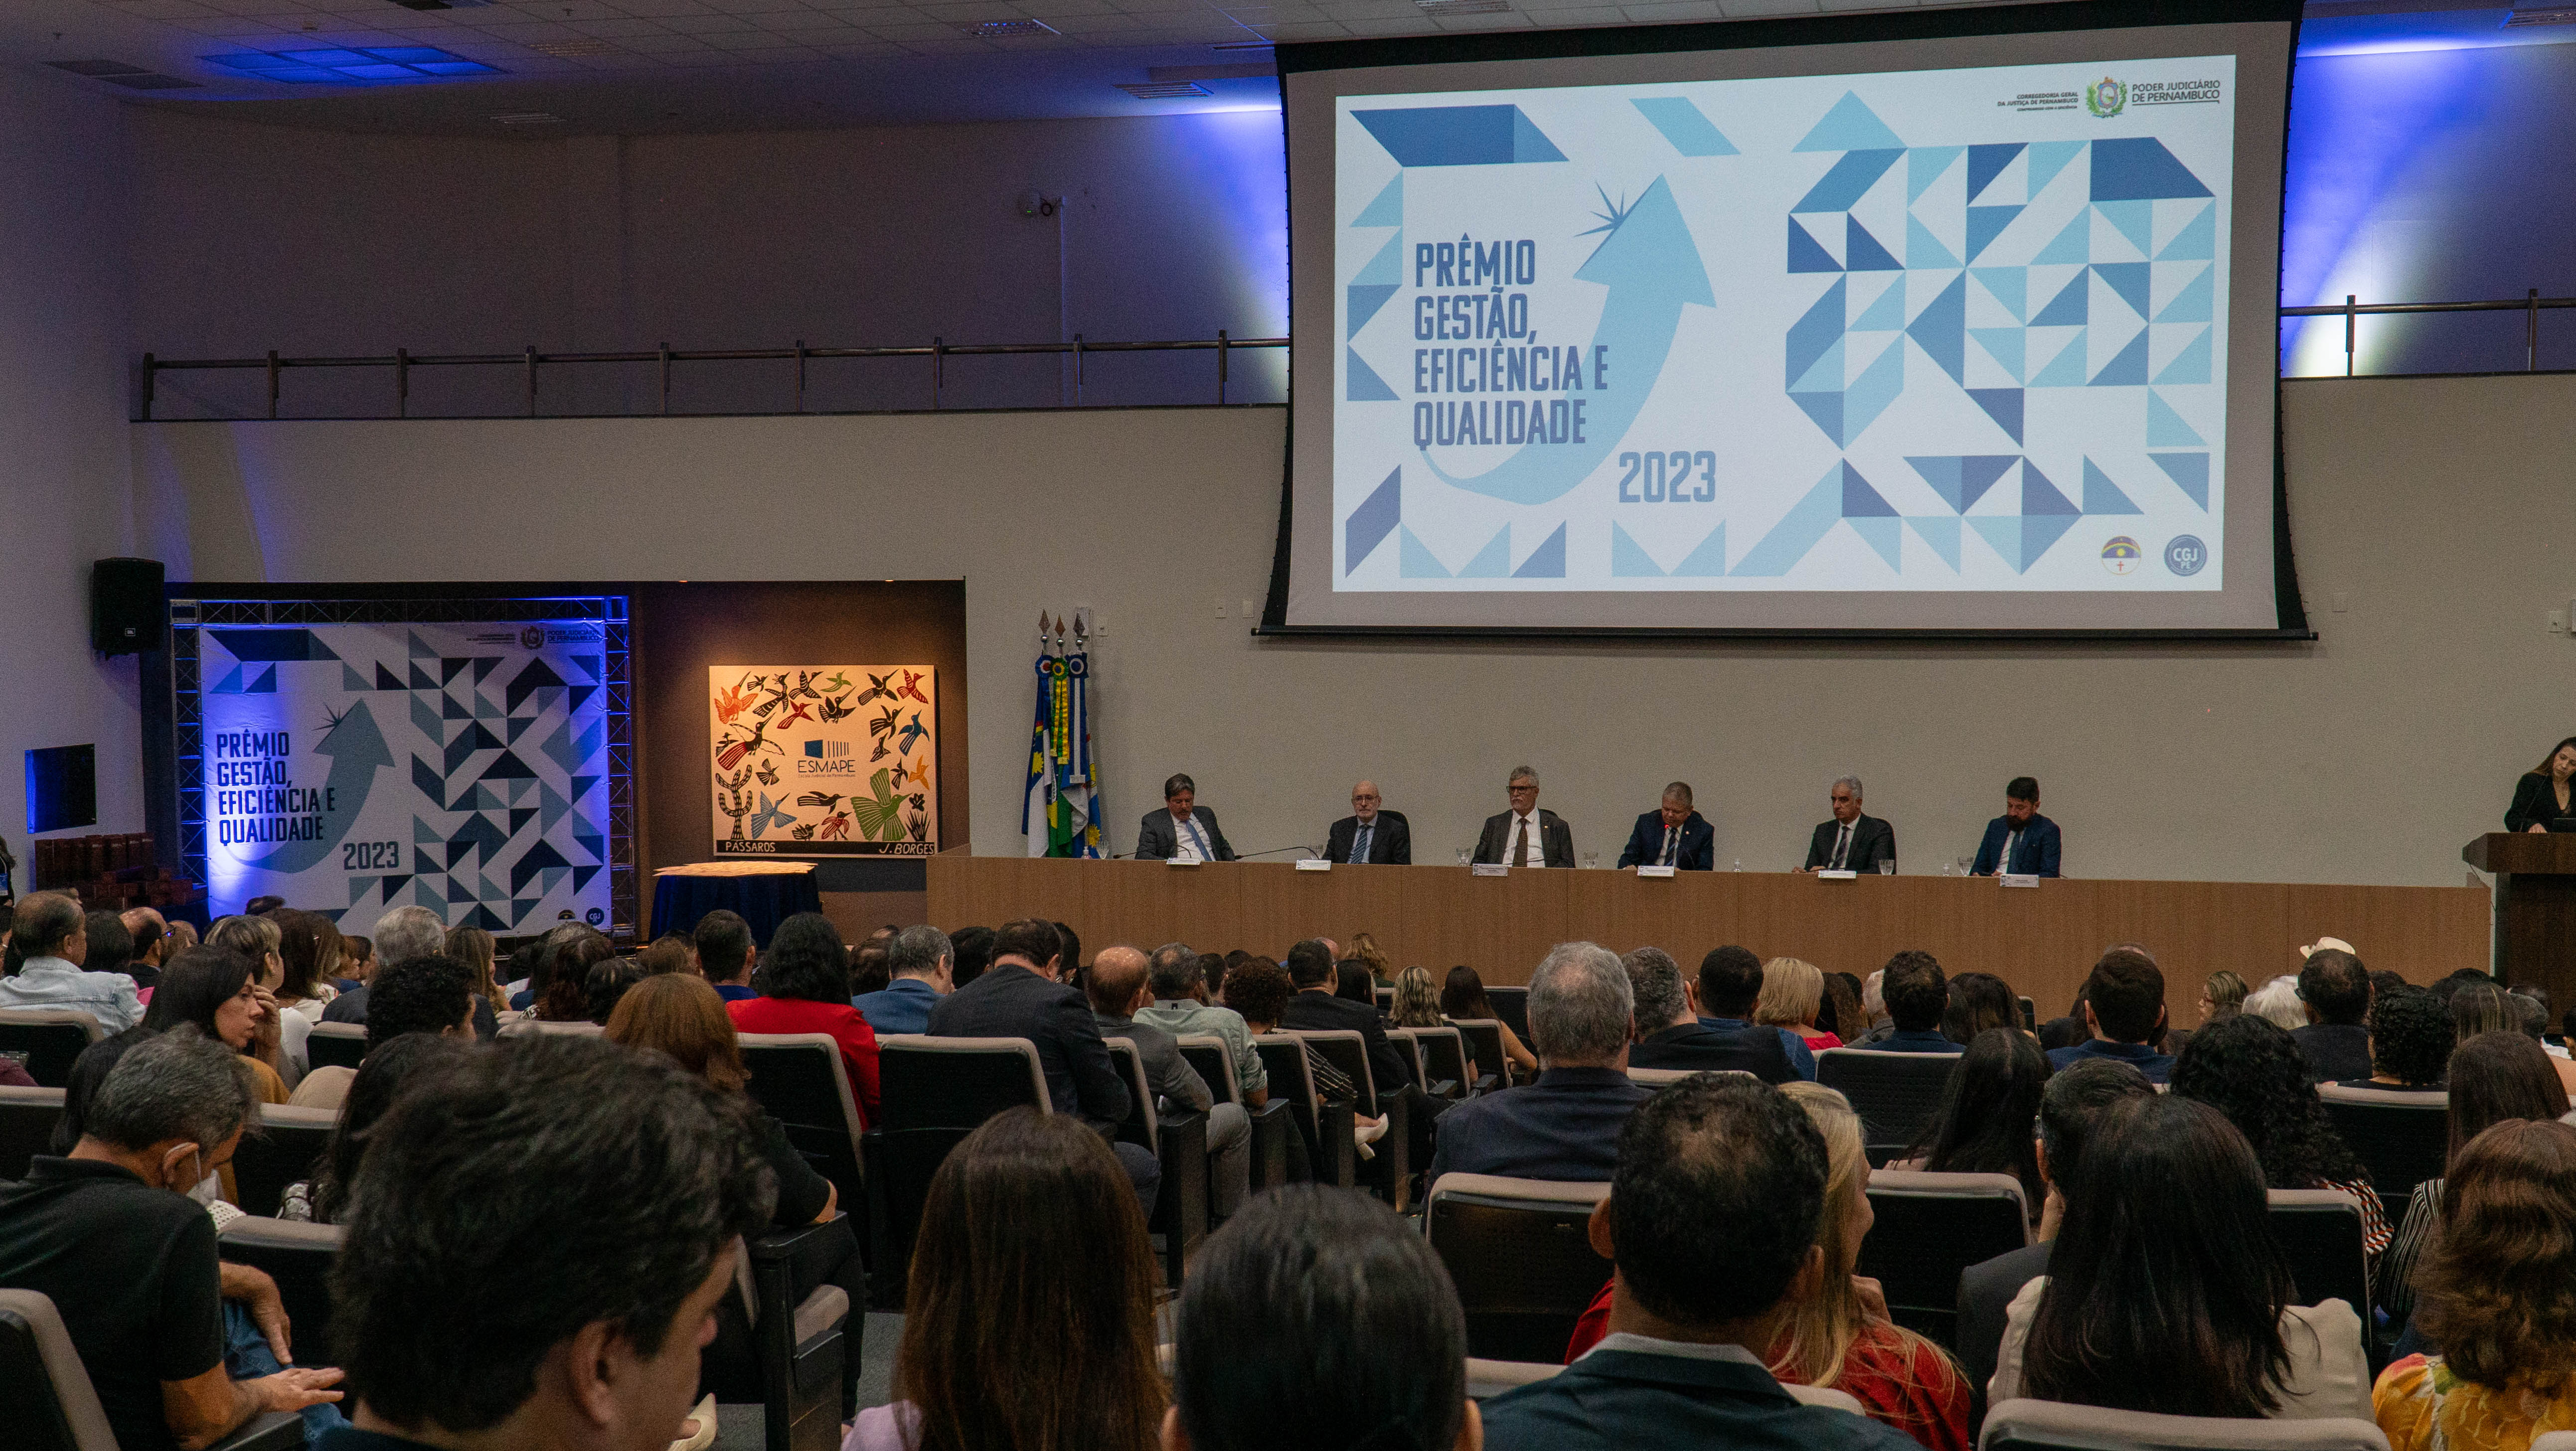 Auditório da Esmape preenchido por juízes(as) e servidores(as) durante a entrega do Prêmio Gestão, Eficiência e Qualidade 2023. 